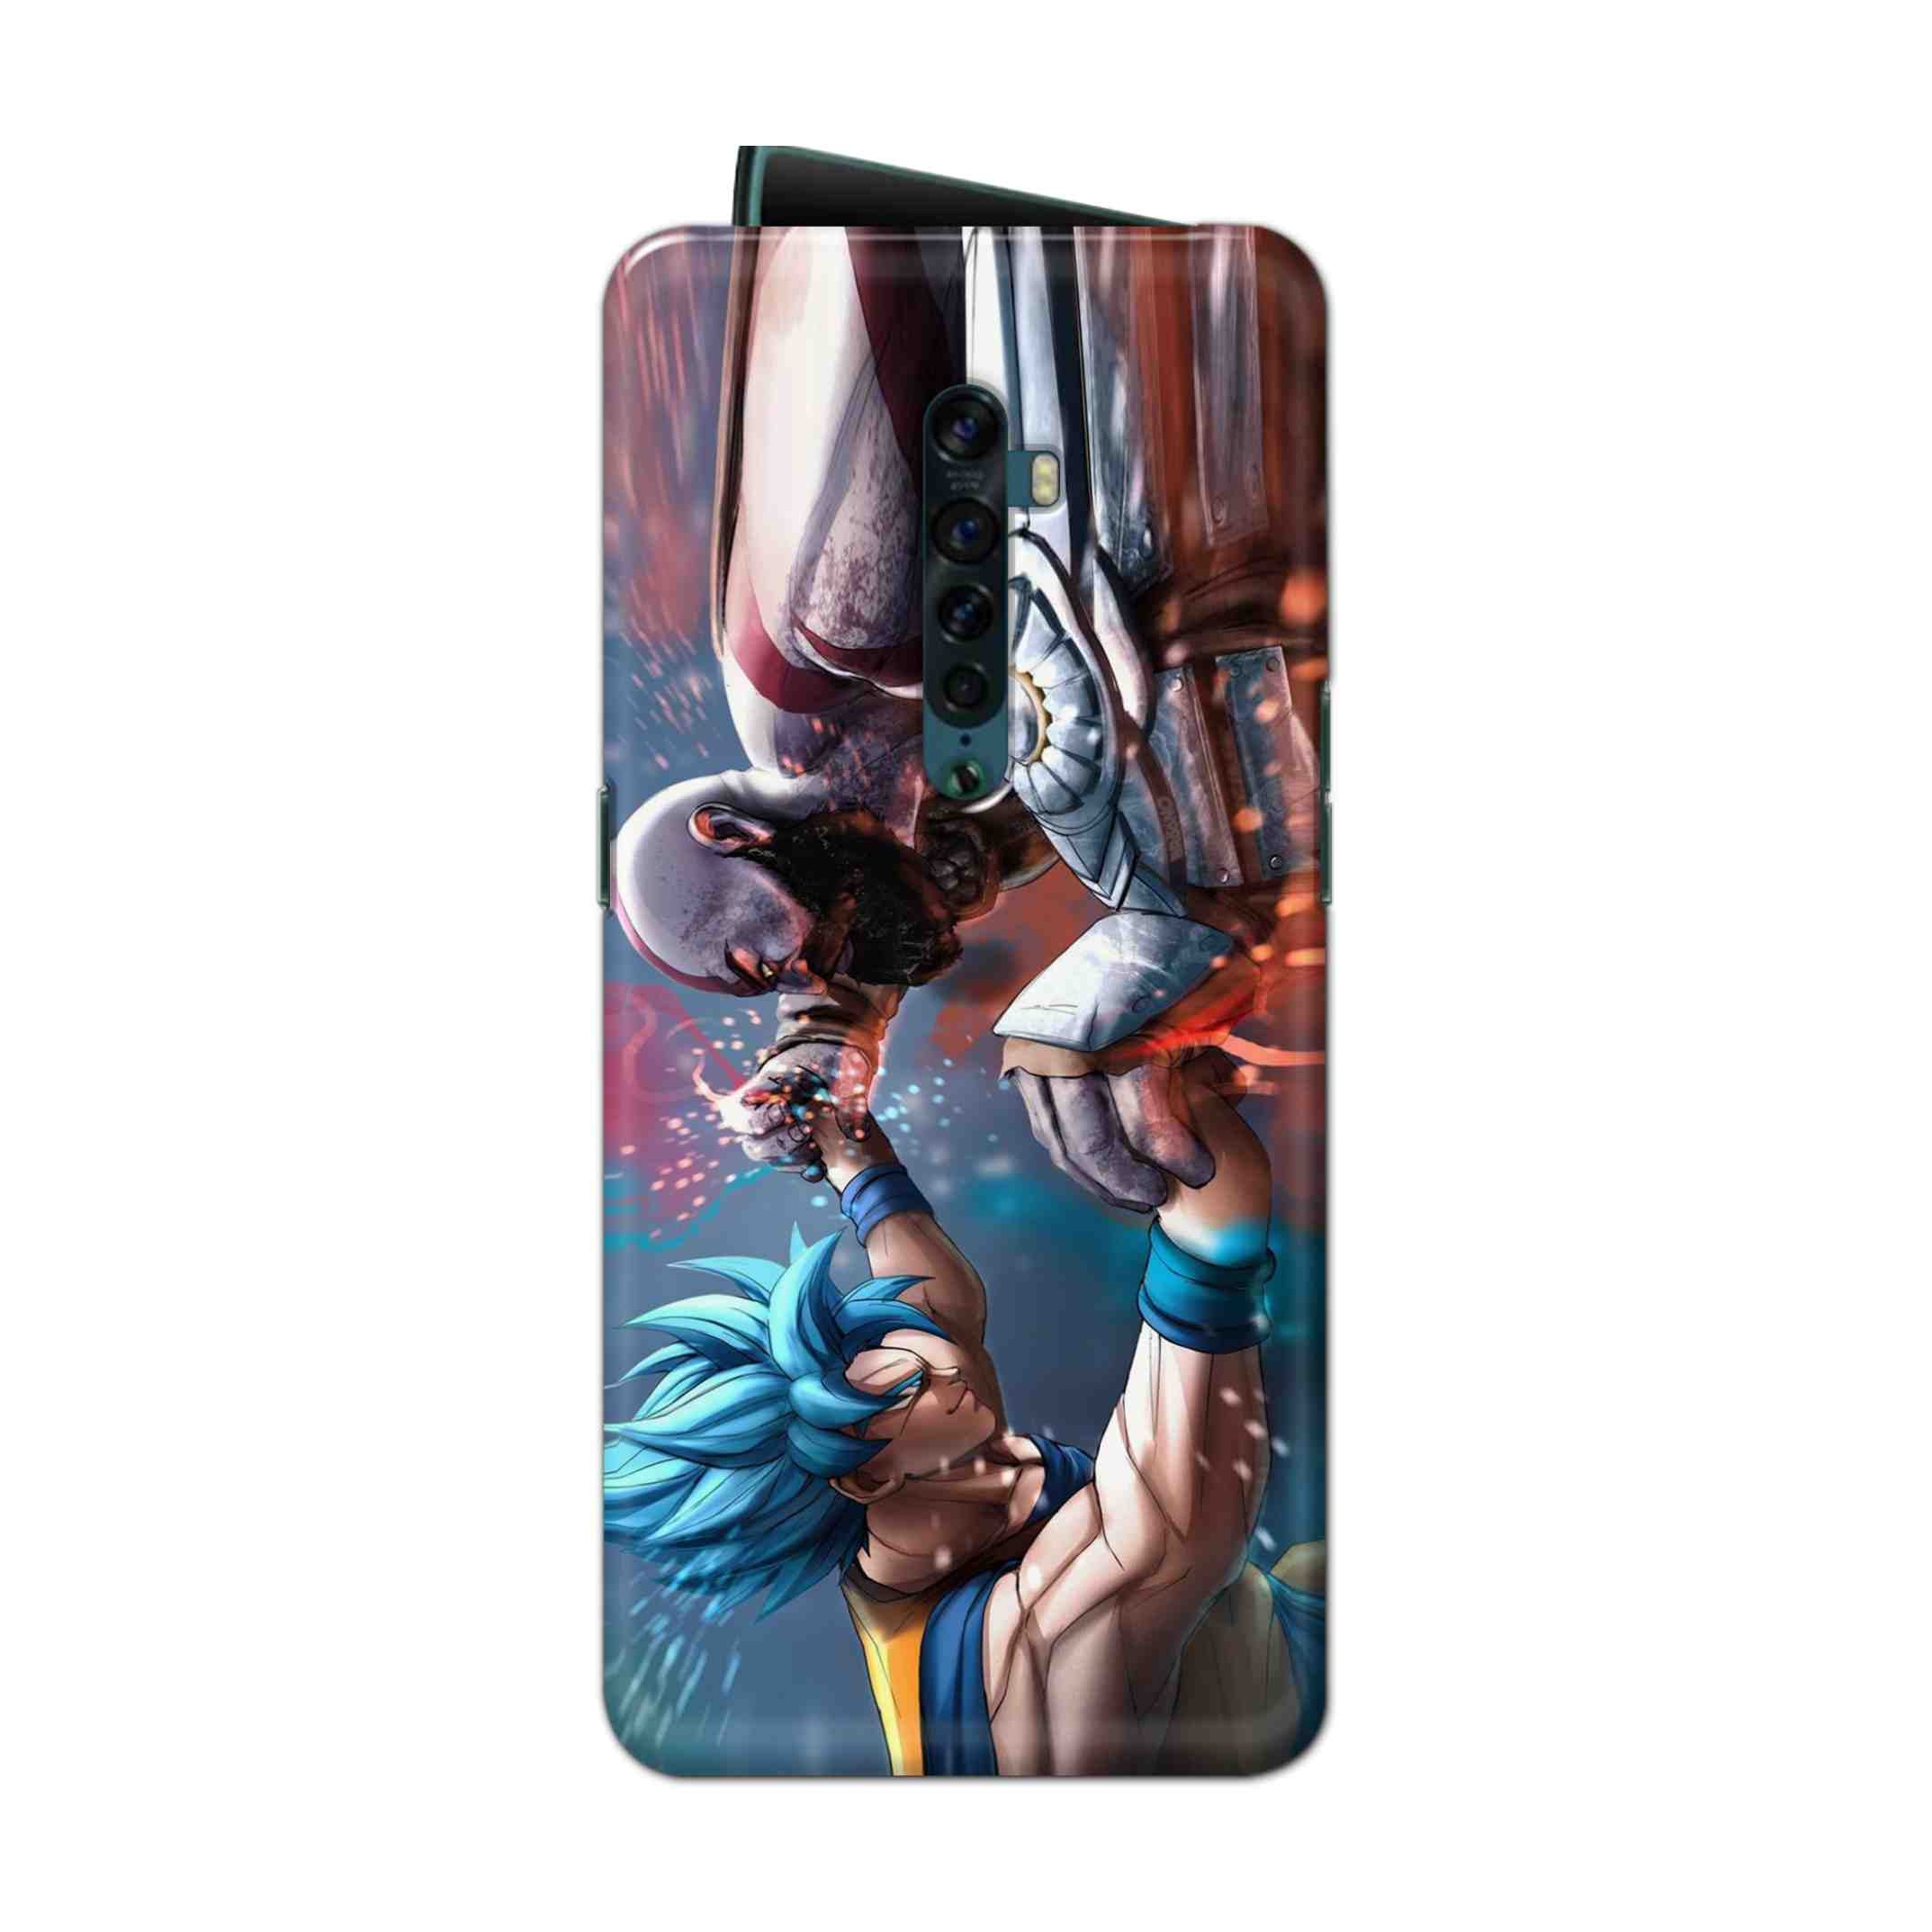 Buy Goku Vs Kratos Hard Back Mobile Phone Case Cover For Oppo Reno 2 Online